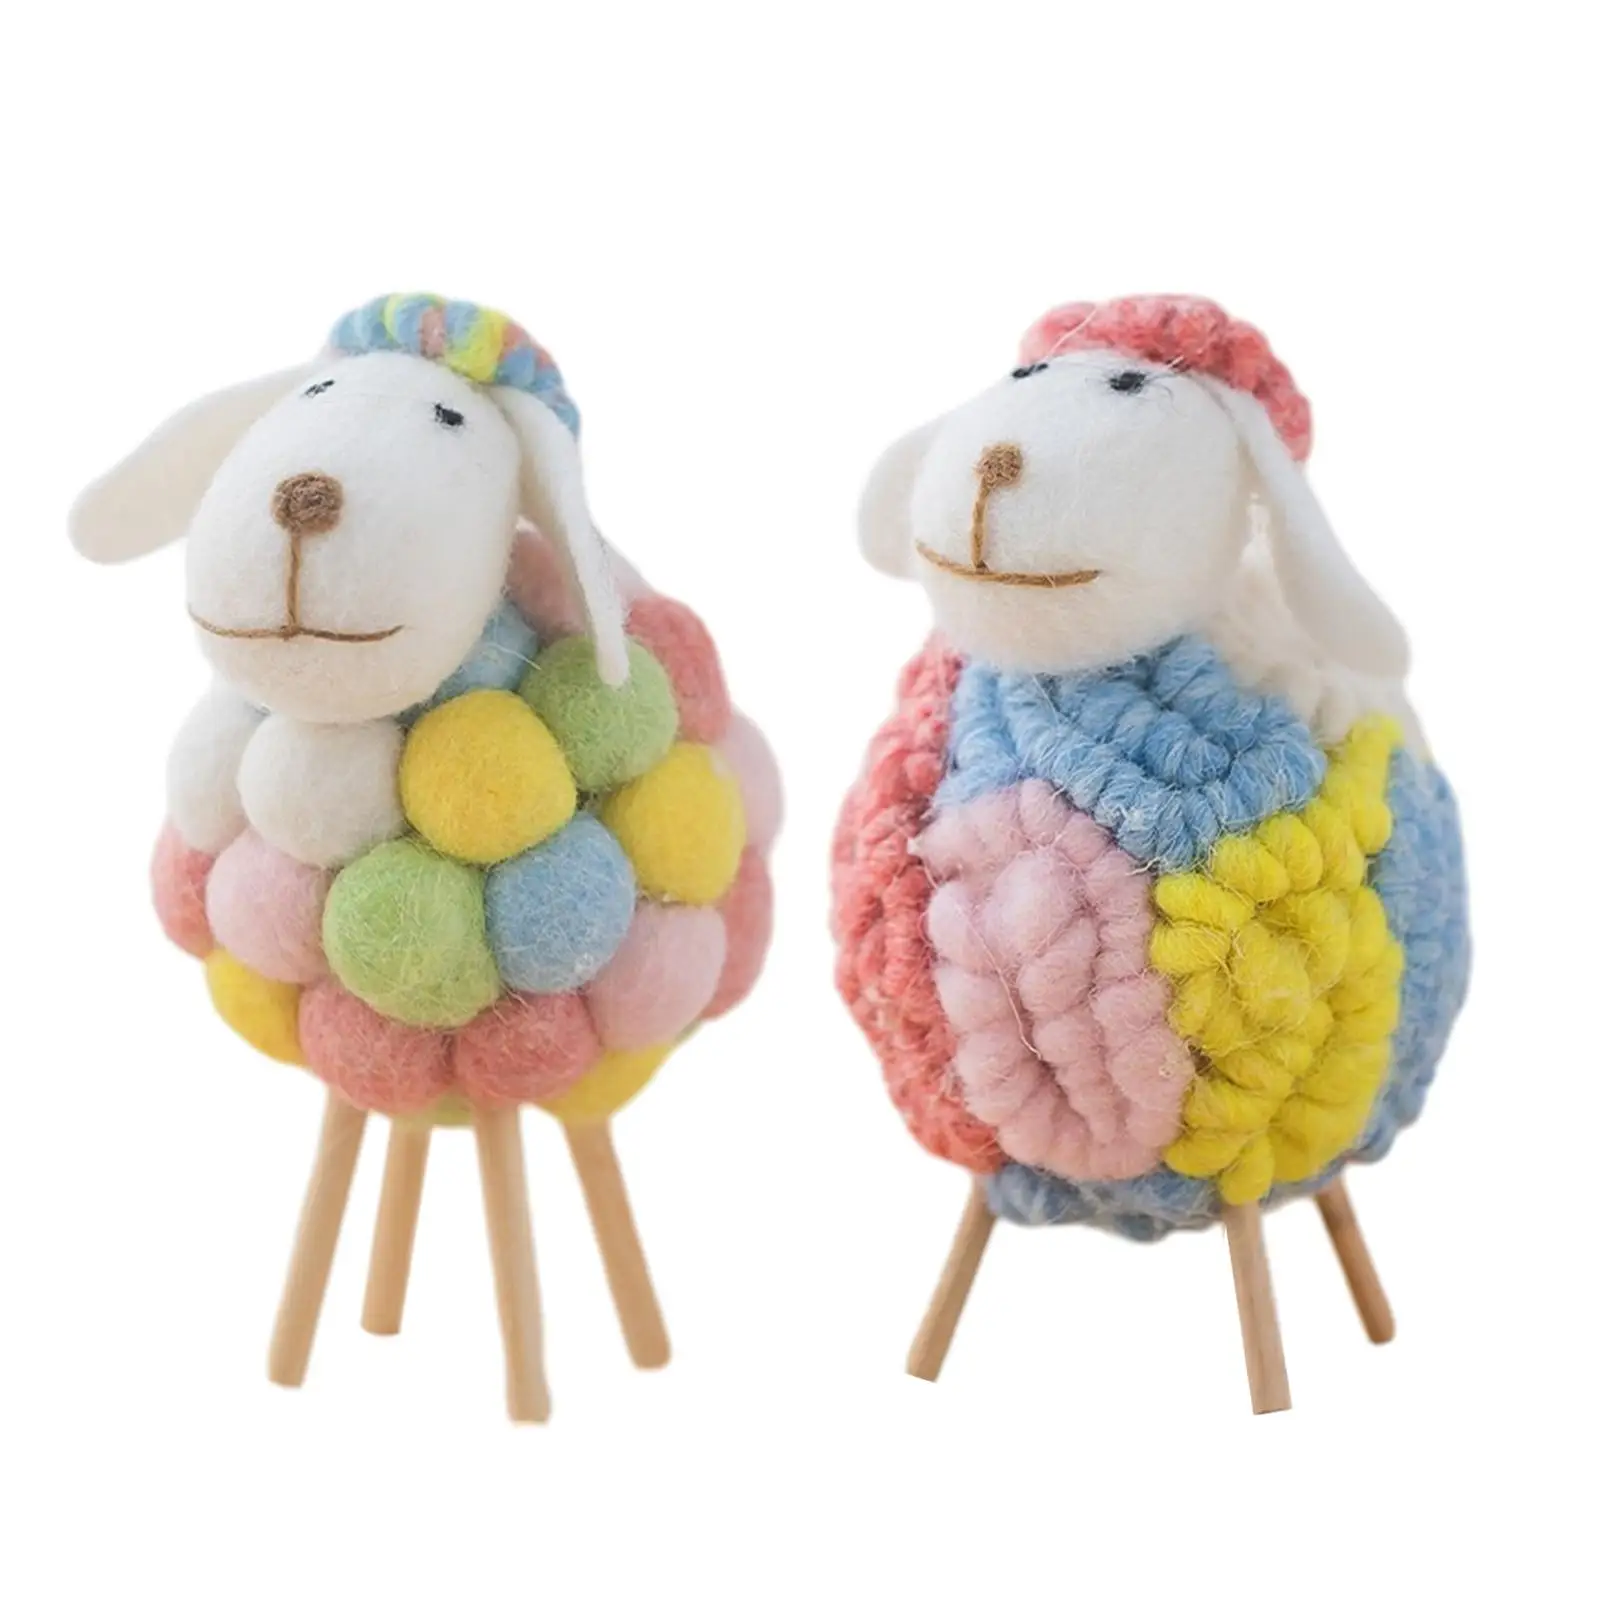 Felt Sheep Lamb Figurine Table Ornament Farm Animal Figurine for Kids Room